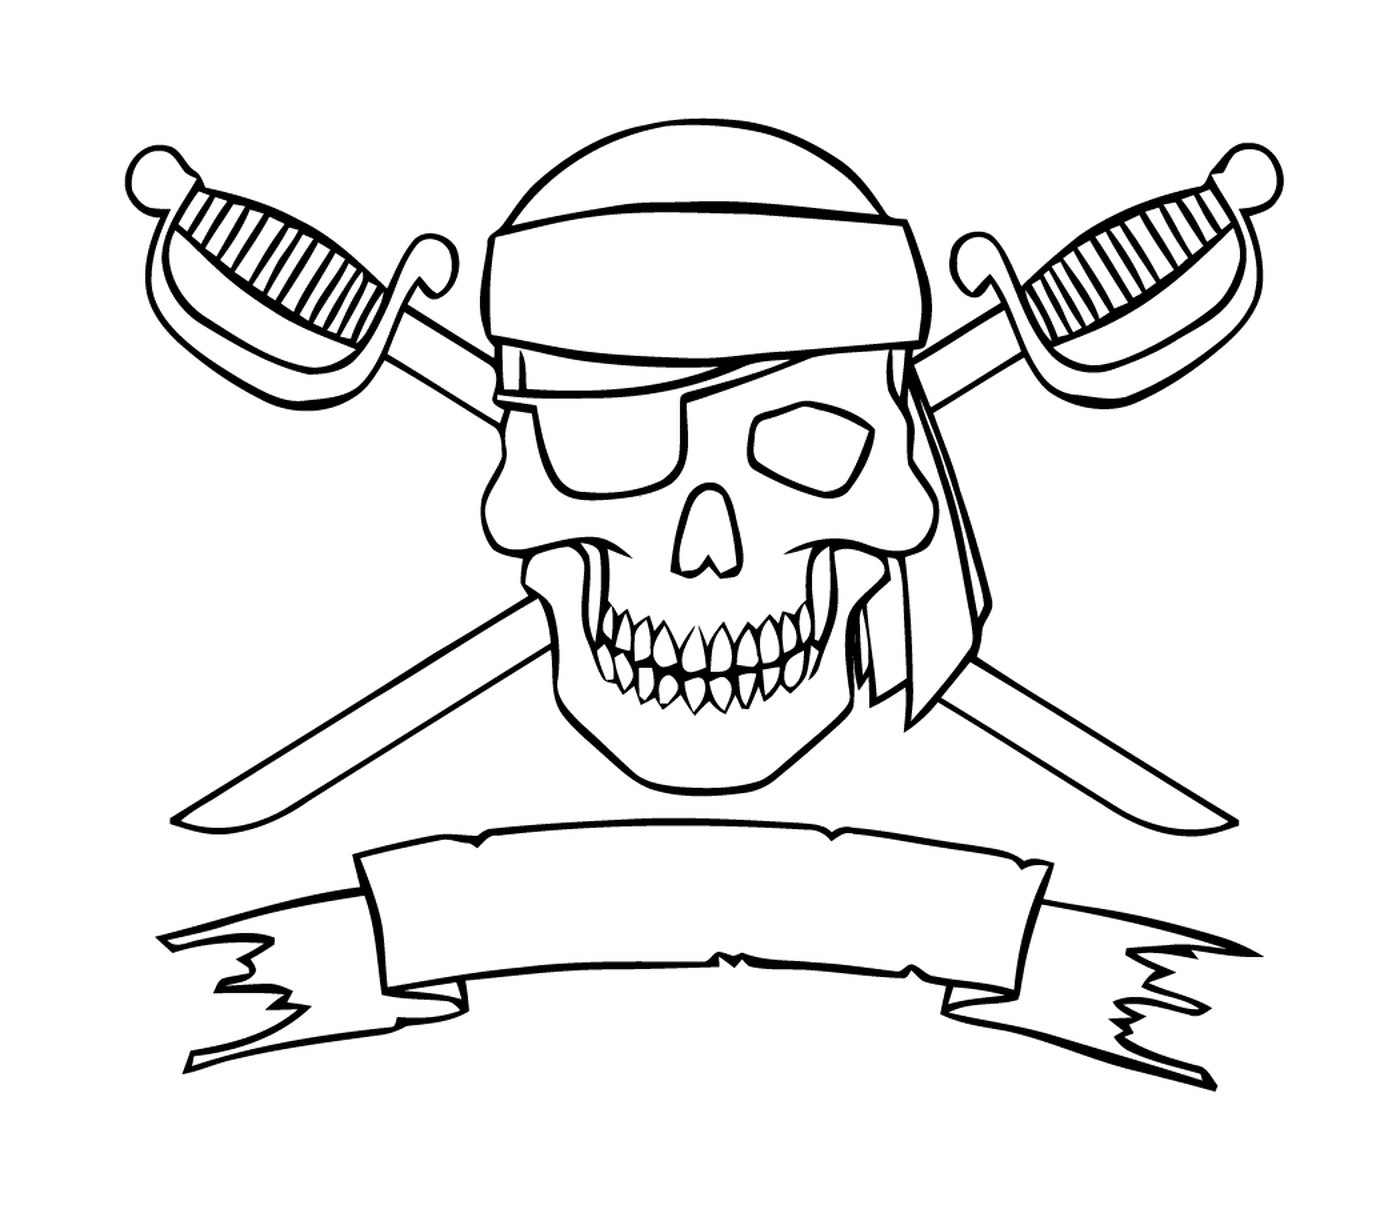  可怕的海盗徽标,跨越剑 